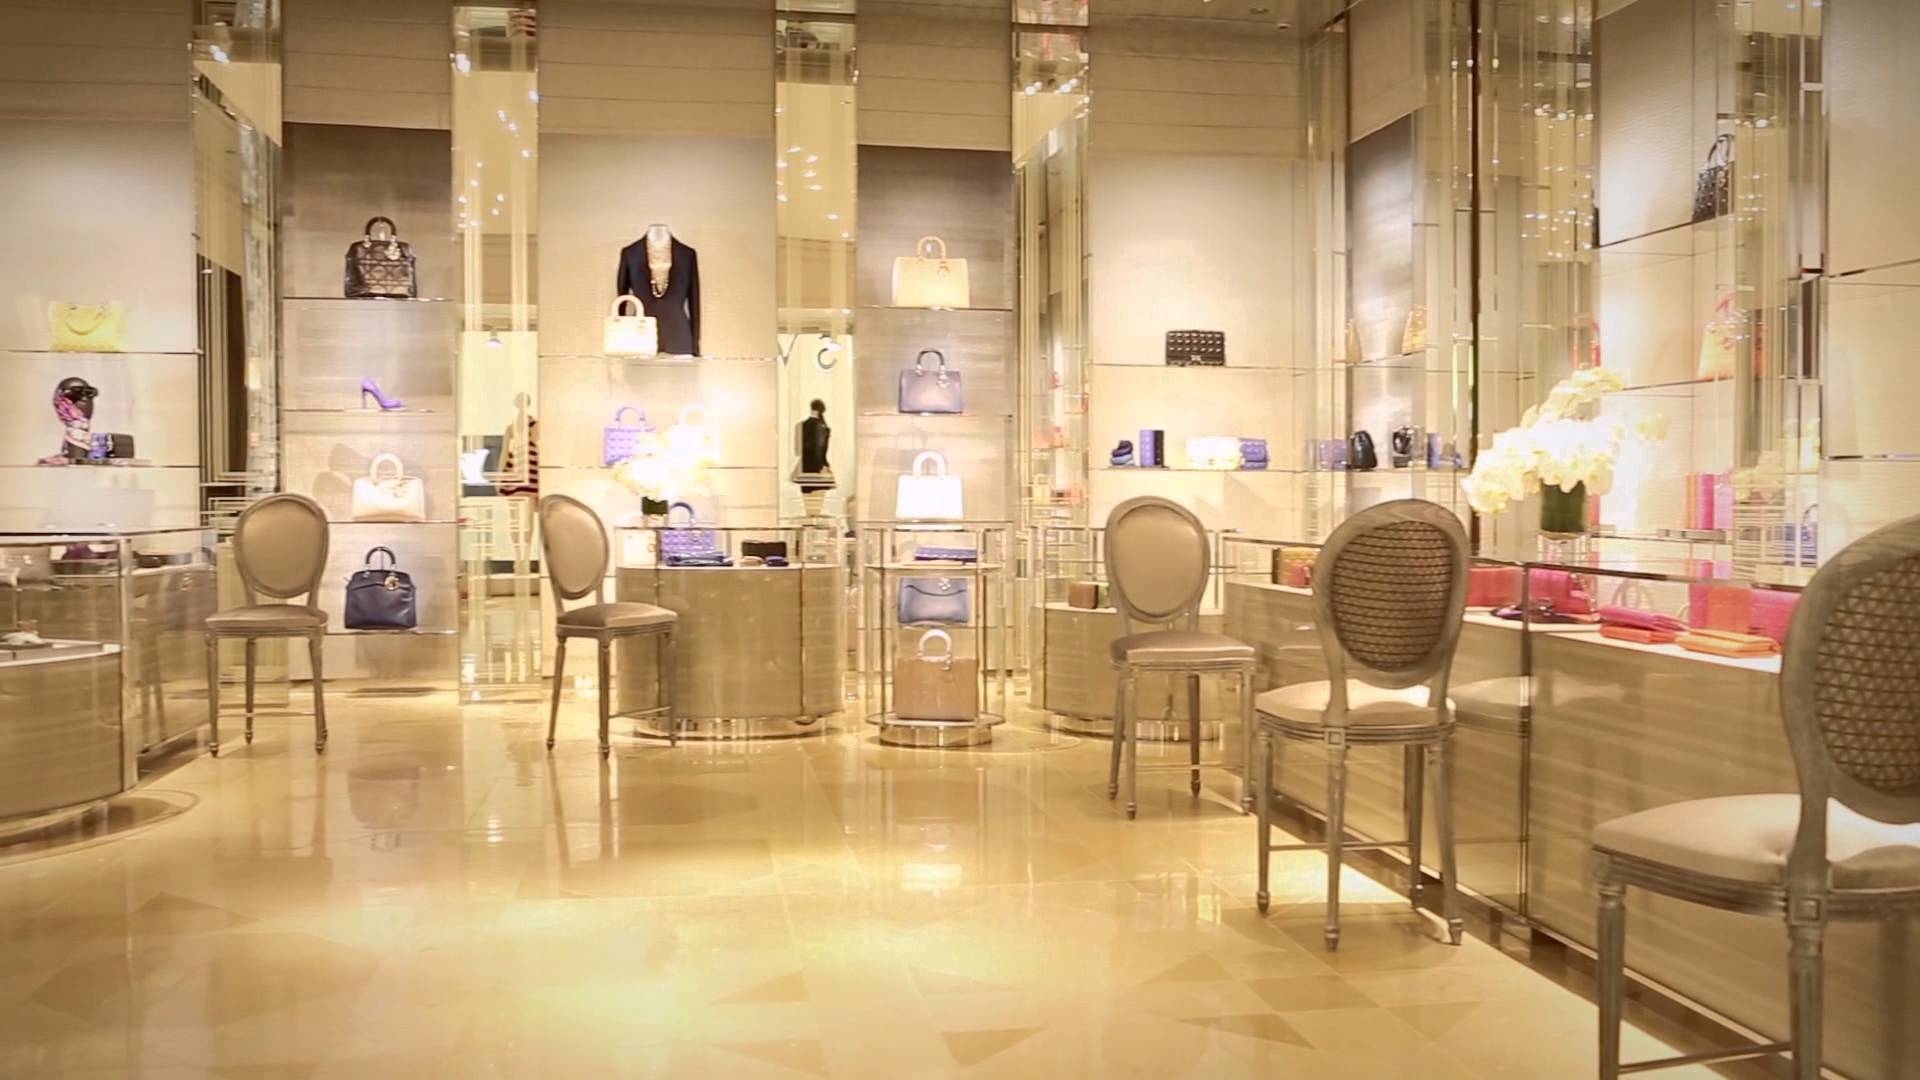 Top 5 cửa hàng bán son Dior chính hãng giá rẻ tại TPHCM